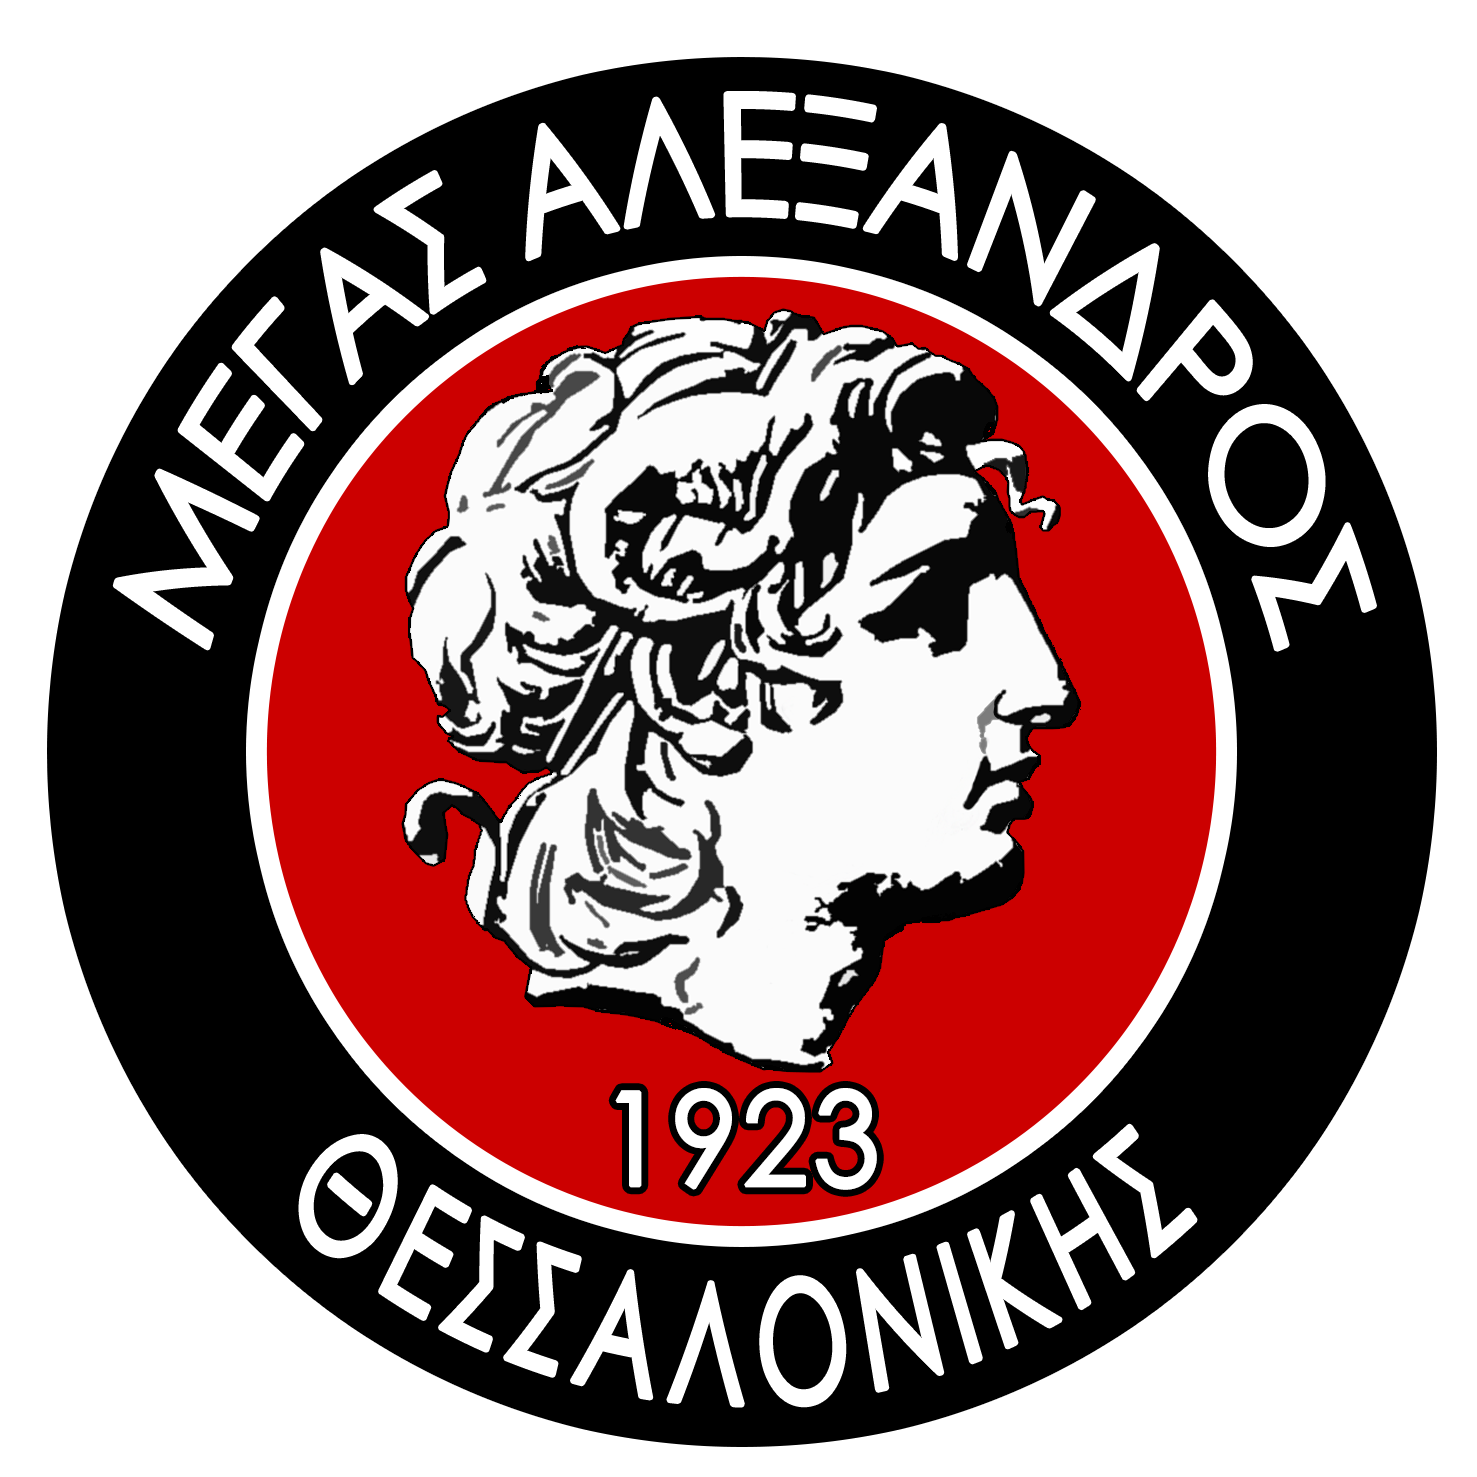 Μέγας Αλέξανδρος Θεσσαλονίκης